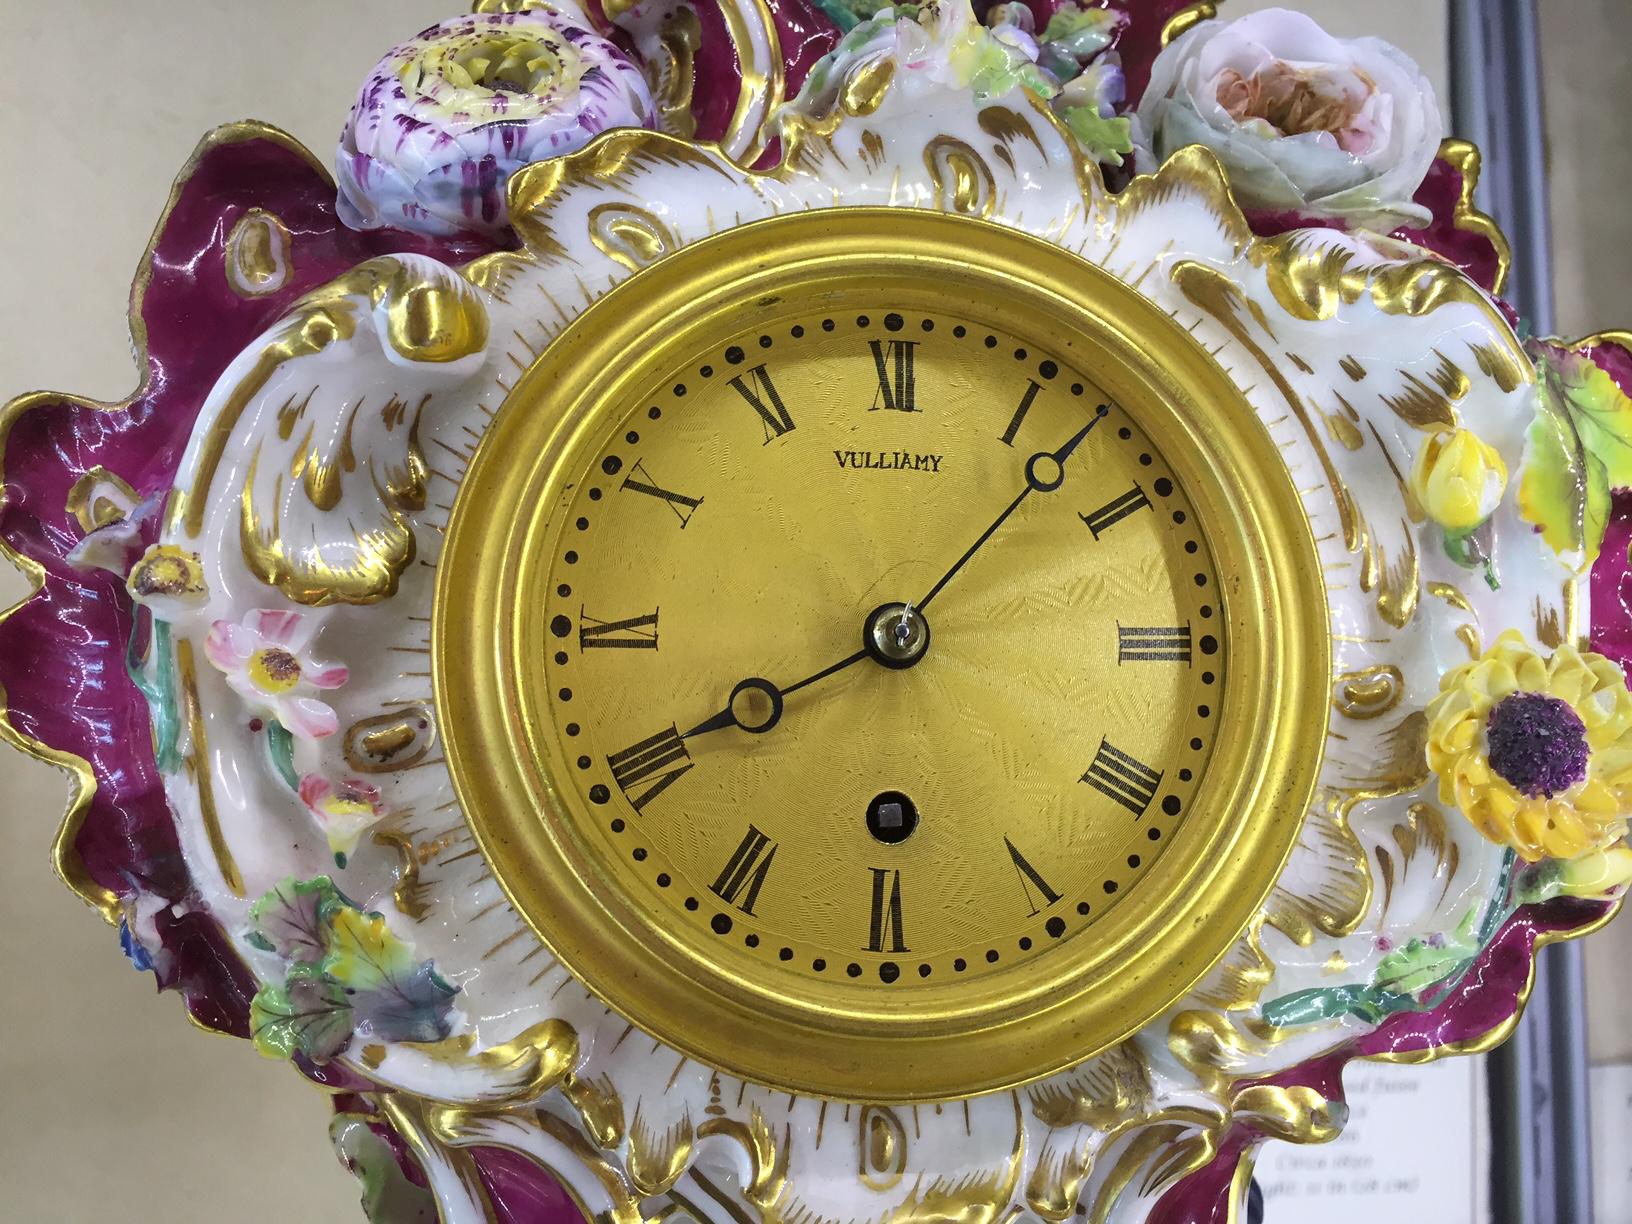 Une belle montre à boîtier en porcelaine de Coalport du début du 19e siècle de ce célèbre fabricant.

Le coffret en porcelaine rose est orné d'oiseaux et de fleurs exotiques sur des pieds à volutes, avec des volutes et des treillis dorés. Le